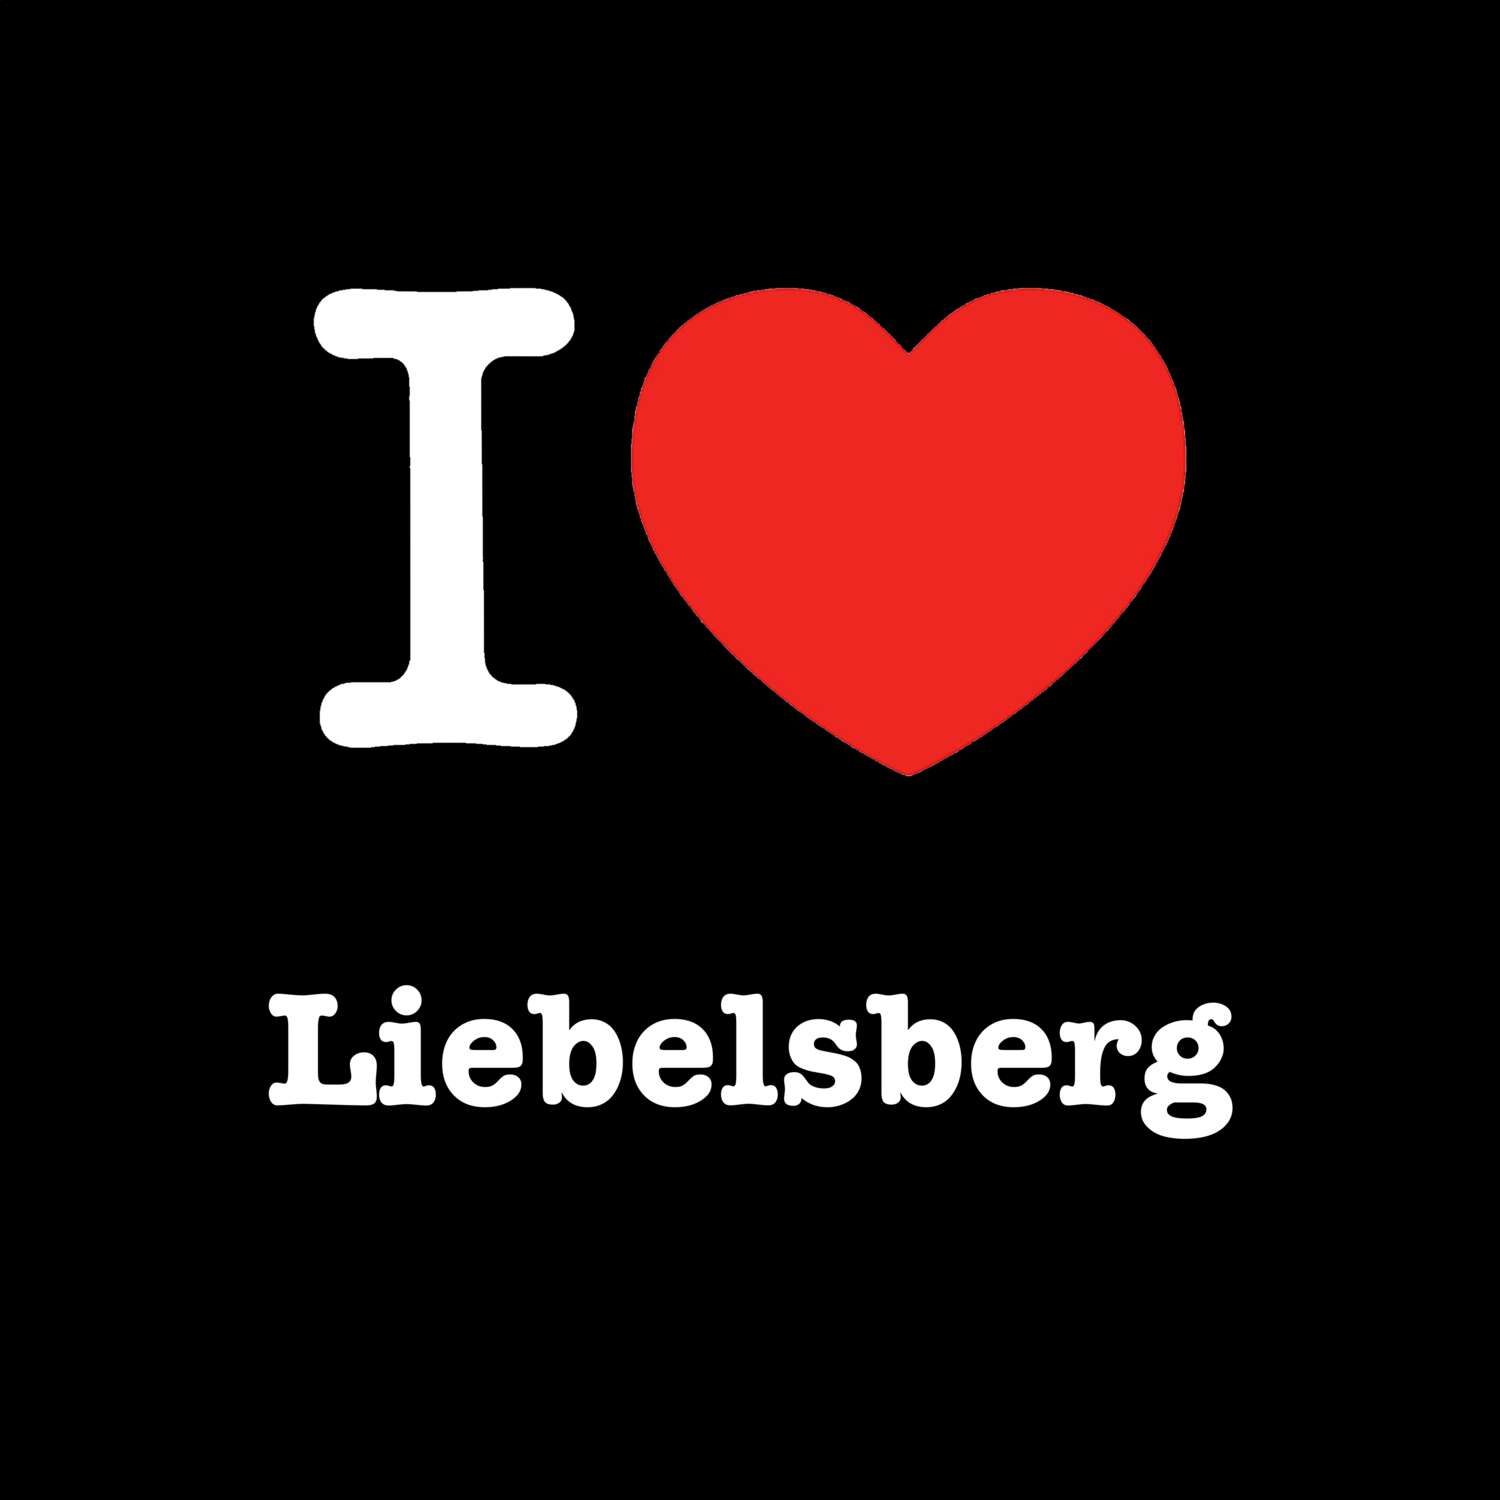 Liebelsberg T-Shirt »I love«